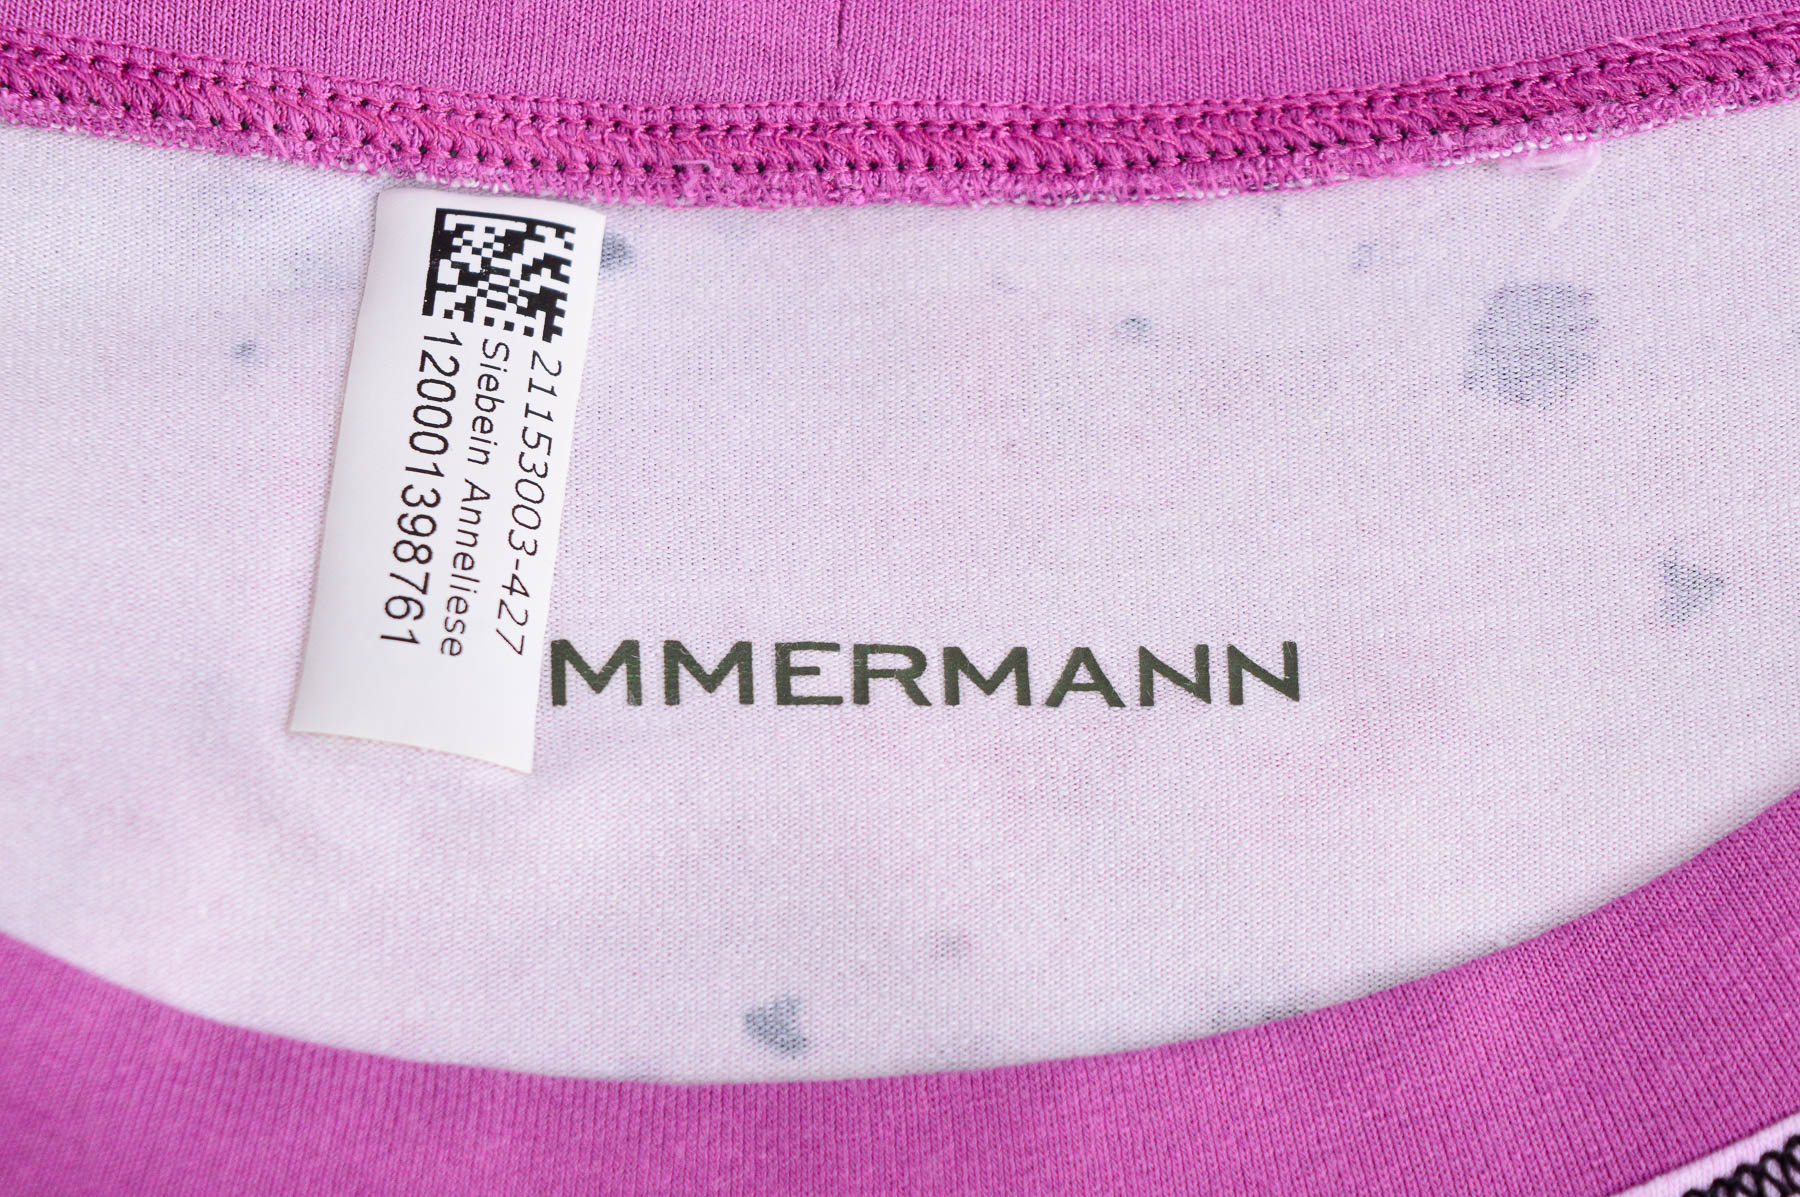 Γυναικεία μπλούζα - Sommermann - 2